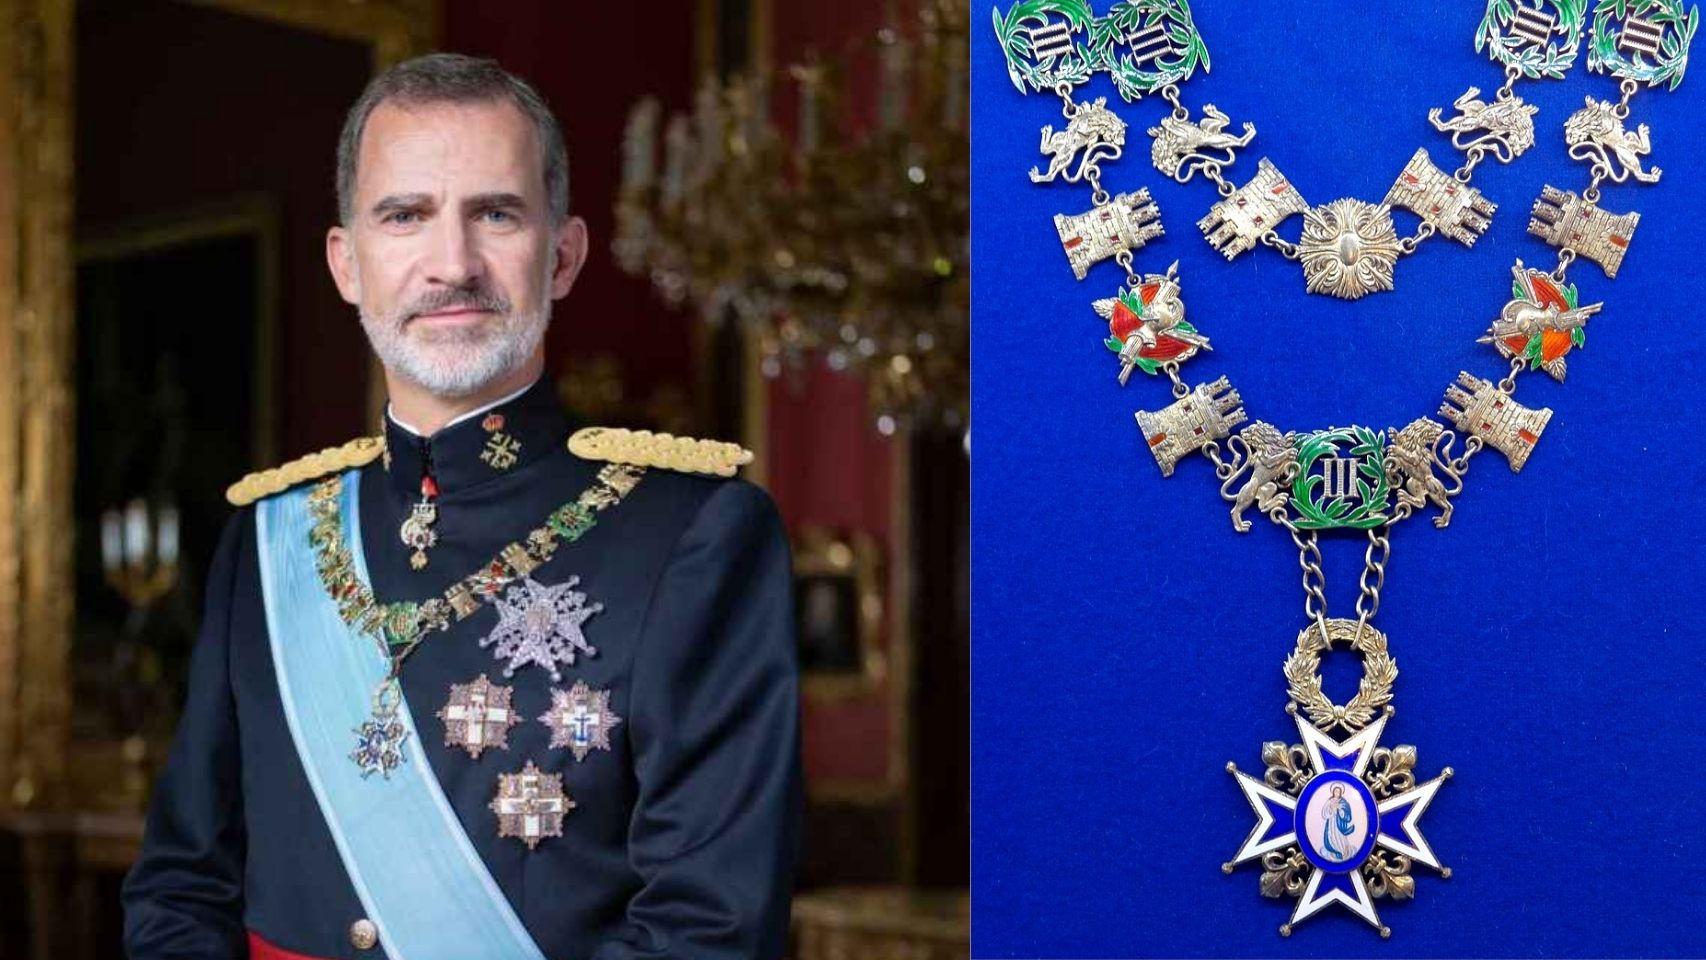 A la izquierda, Felipe VI llevando el Collar de Carlos III; a la derecha, detalle de la condecoración.